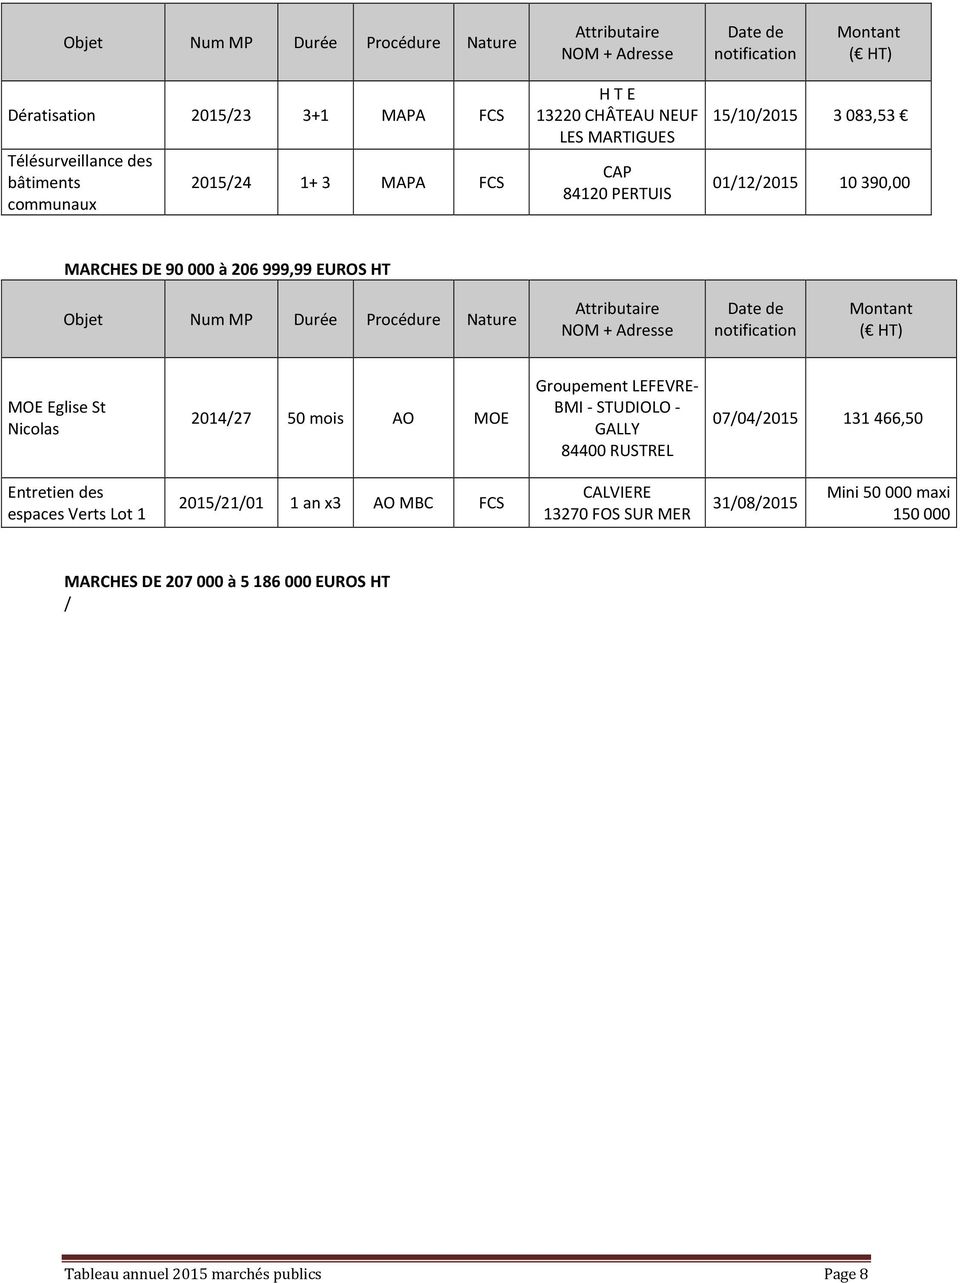 Groupement LEFEVRE- BMI - STUDIOLO - GALLY 84400 RUSTREL 07/04/2015 131 466,50 Entretien des espaces Verts Lot 1 2015/21/01 x3